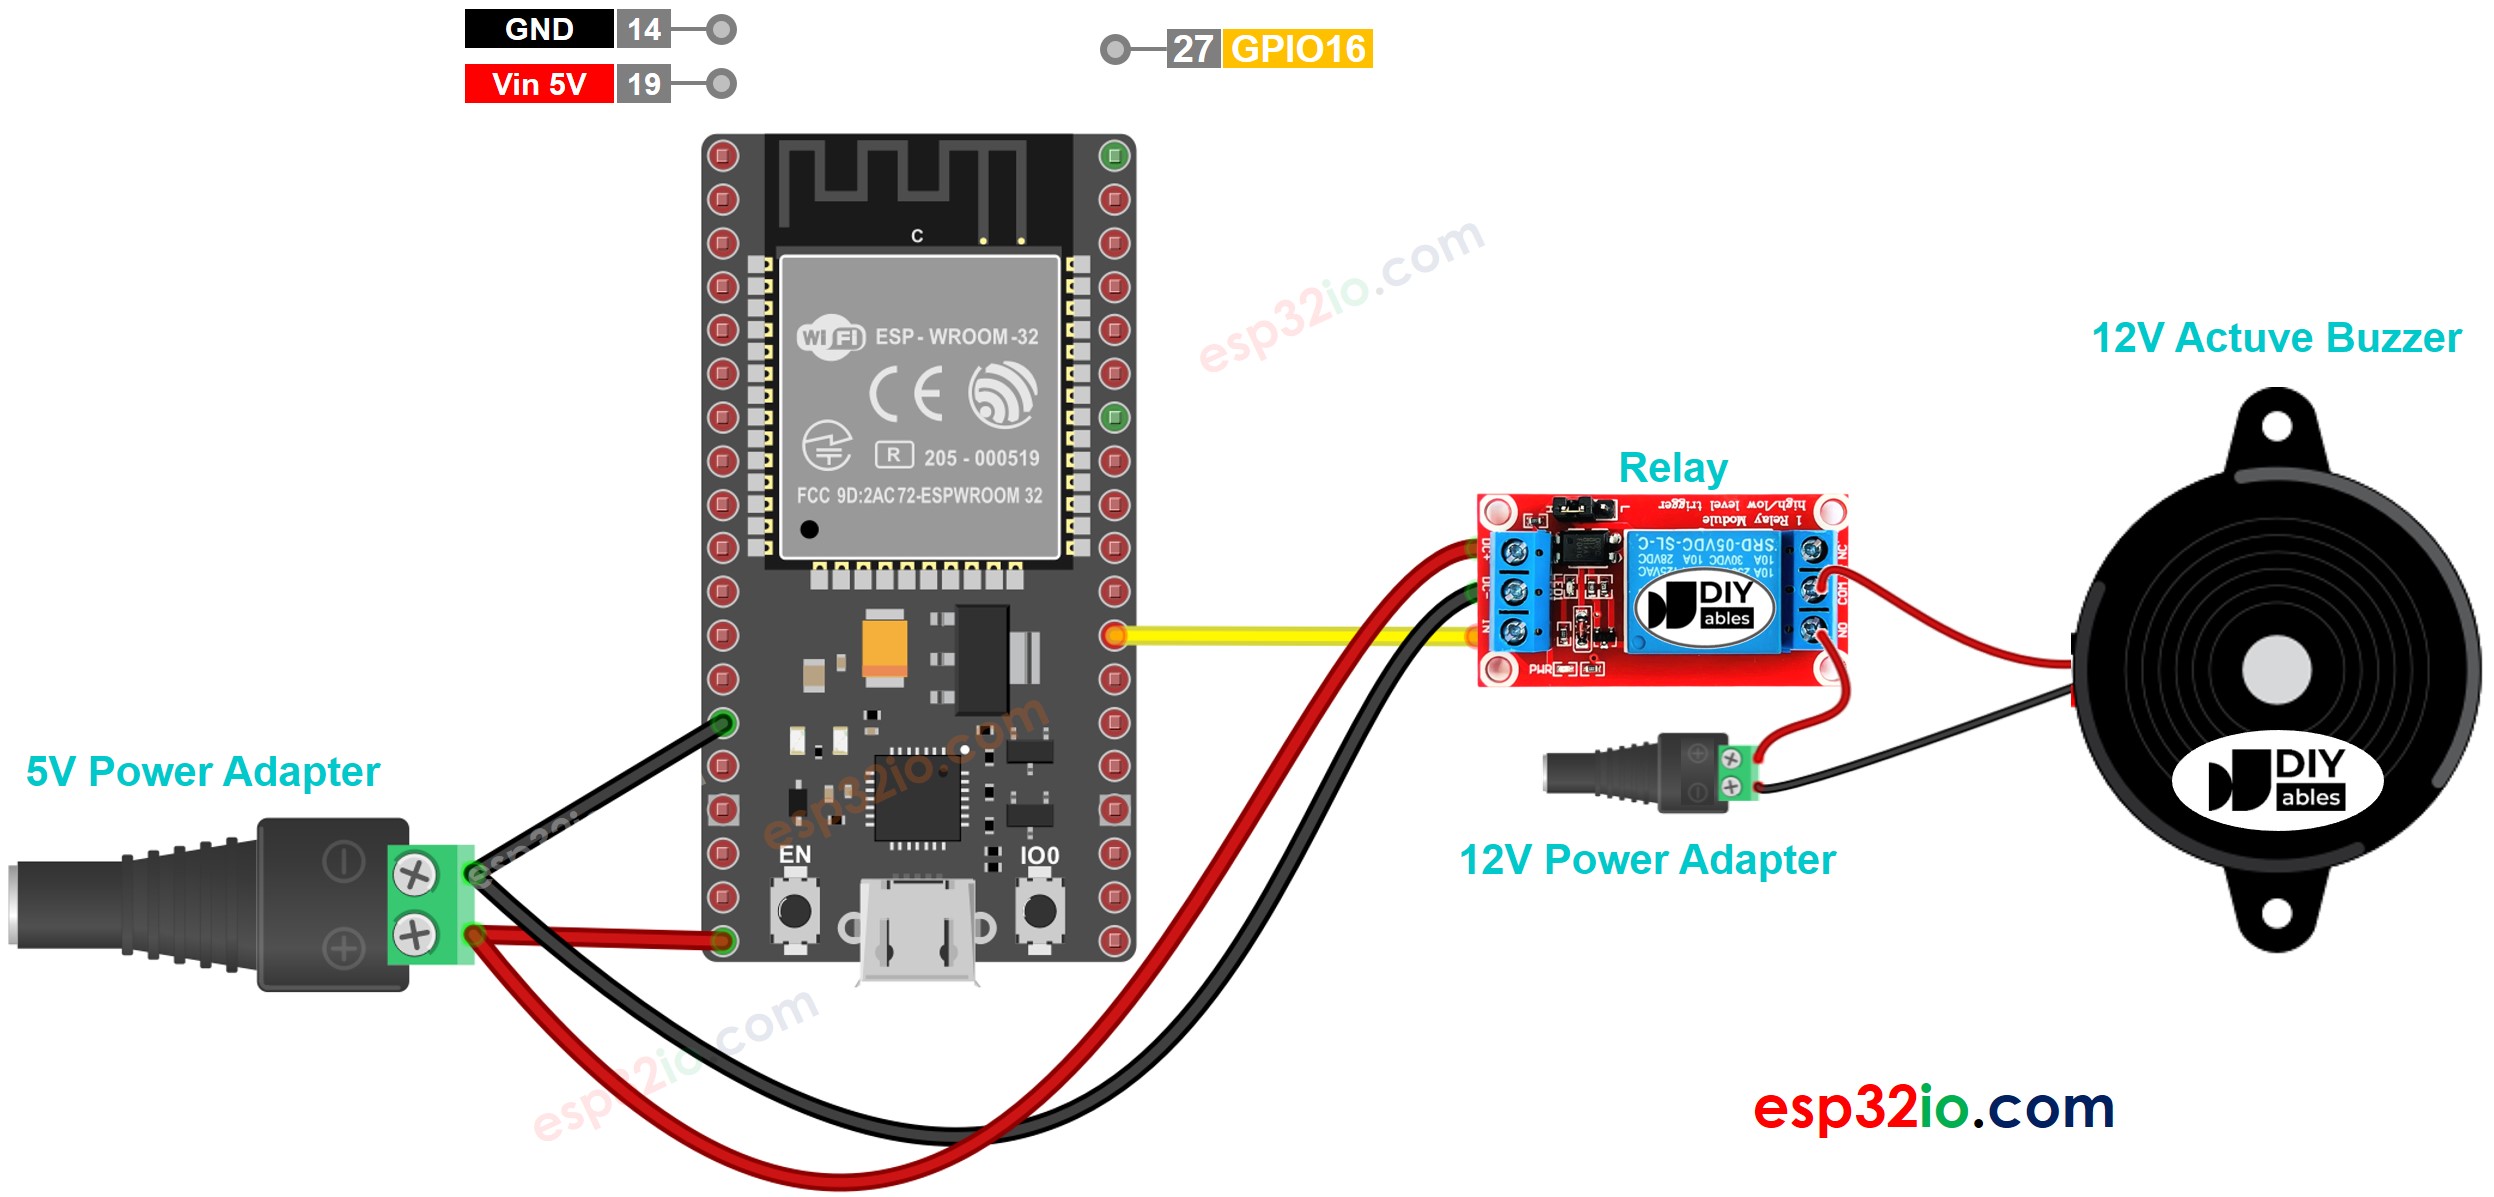 ESP32 12V Active Buzzer Wiring Diagram